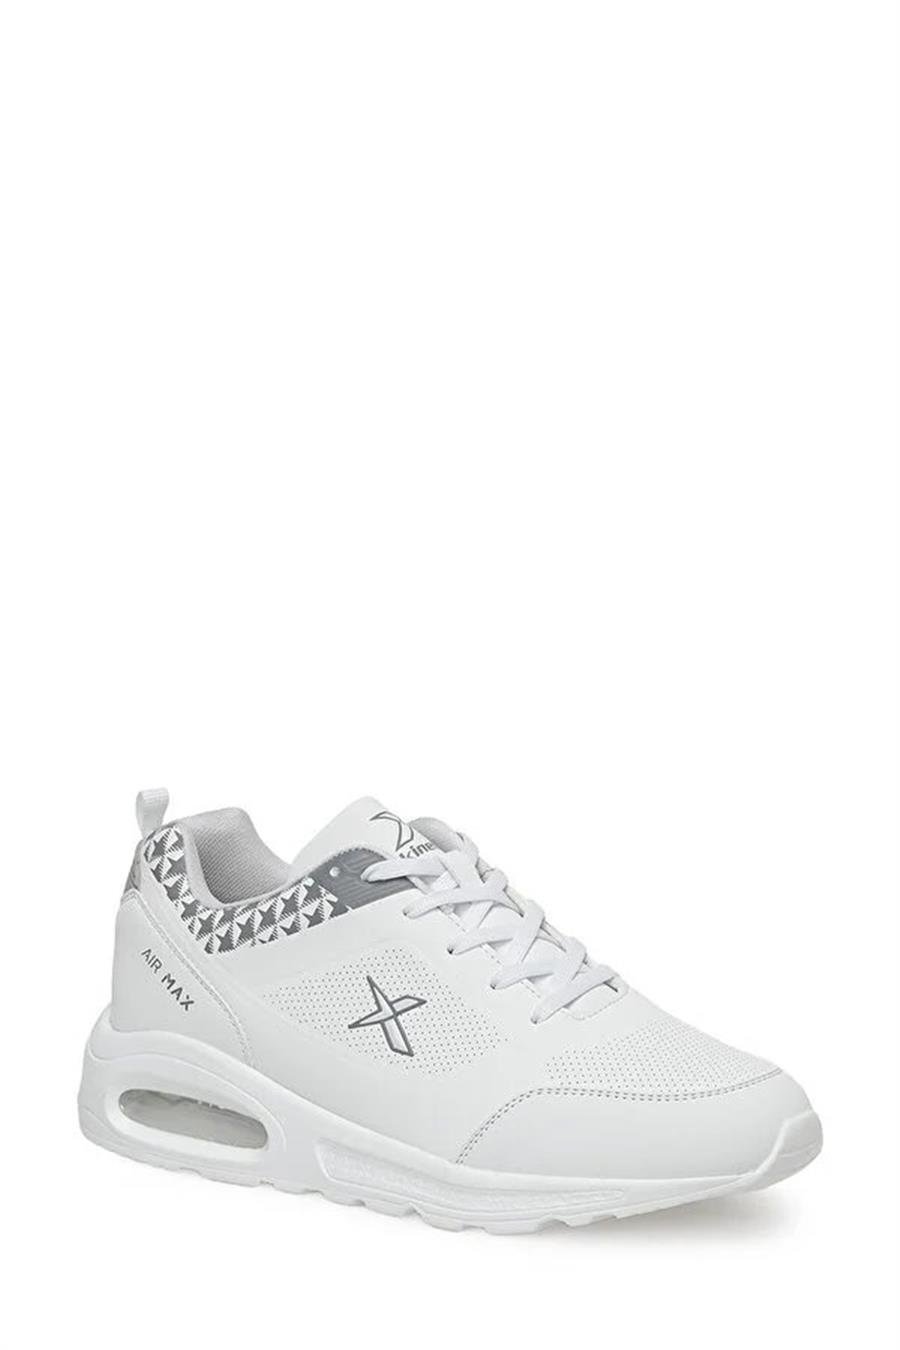 Kinetix Tona Pu 3Pr Beyaz Erkek Sneaker Ayakkabı